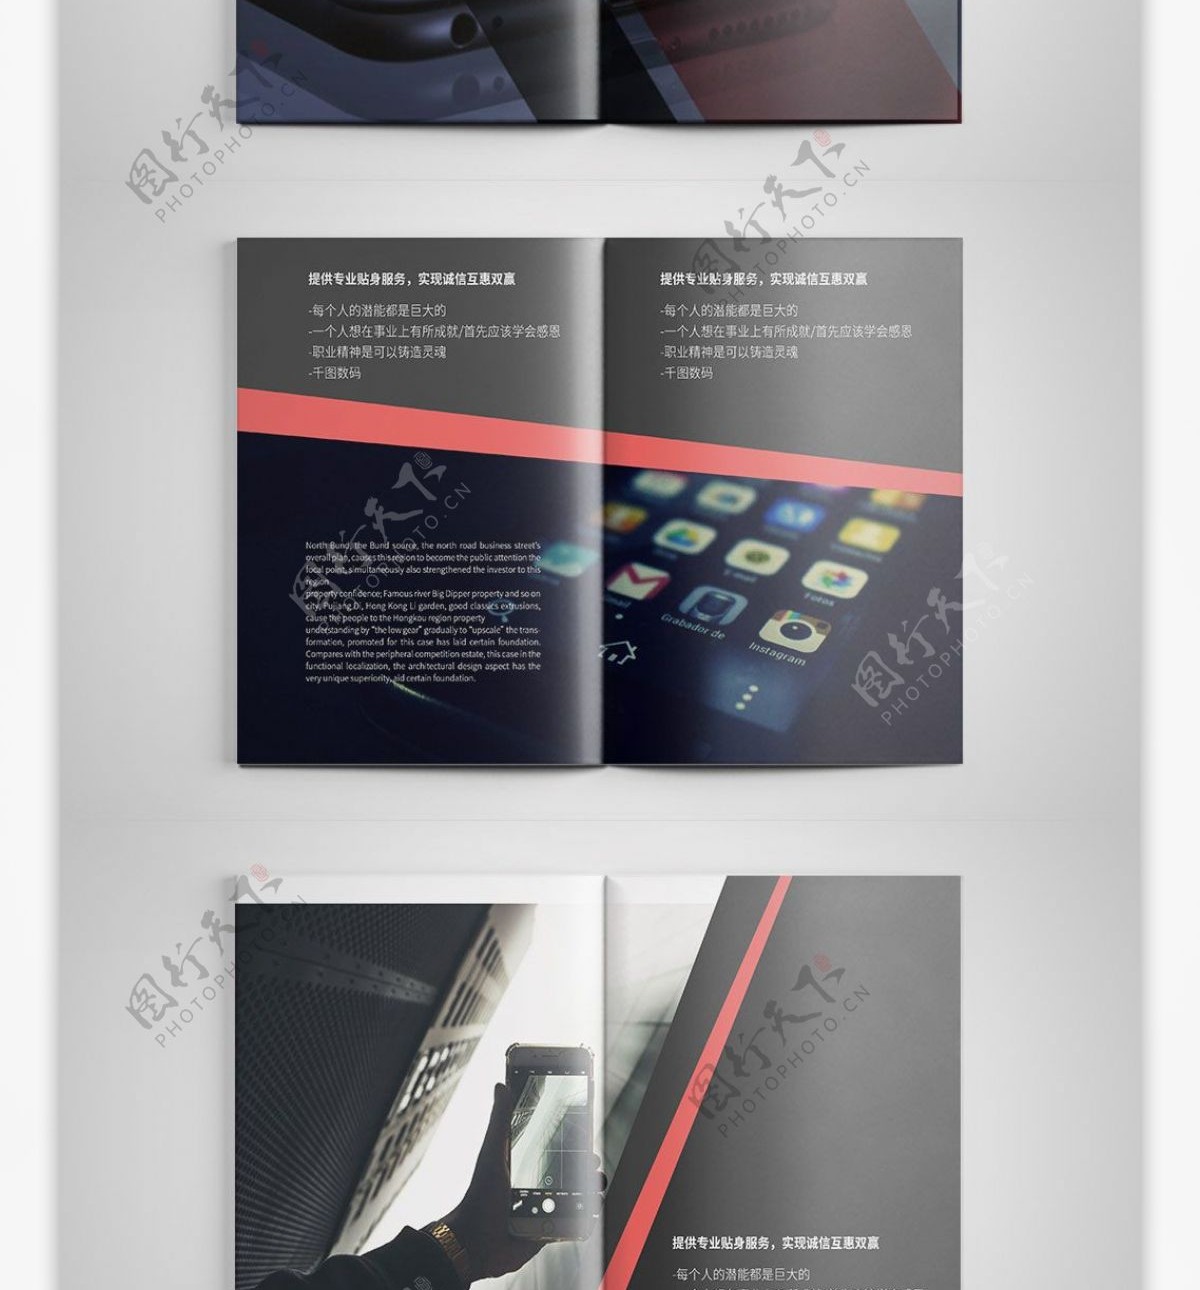 炫酷数码电子产品手机画册设计PSD模板